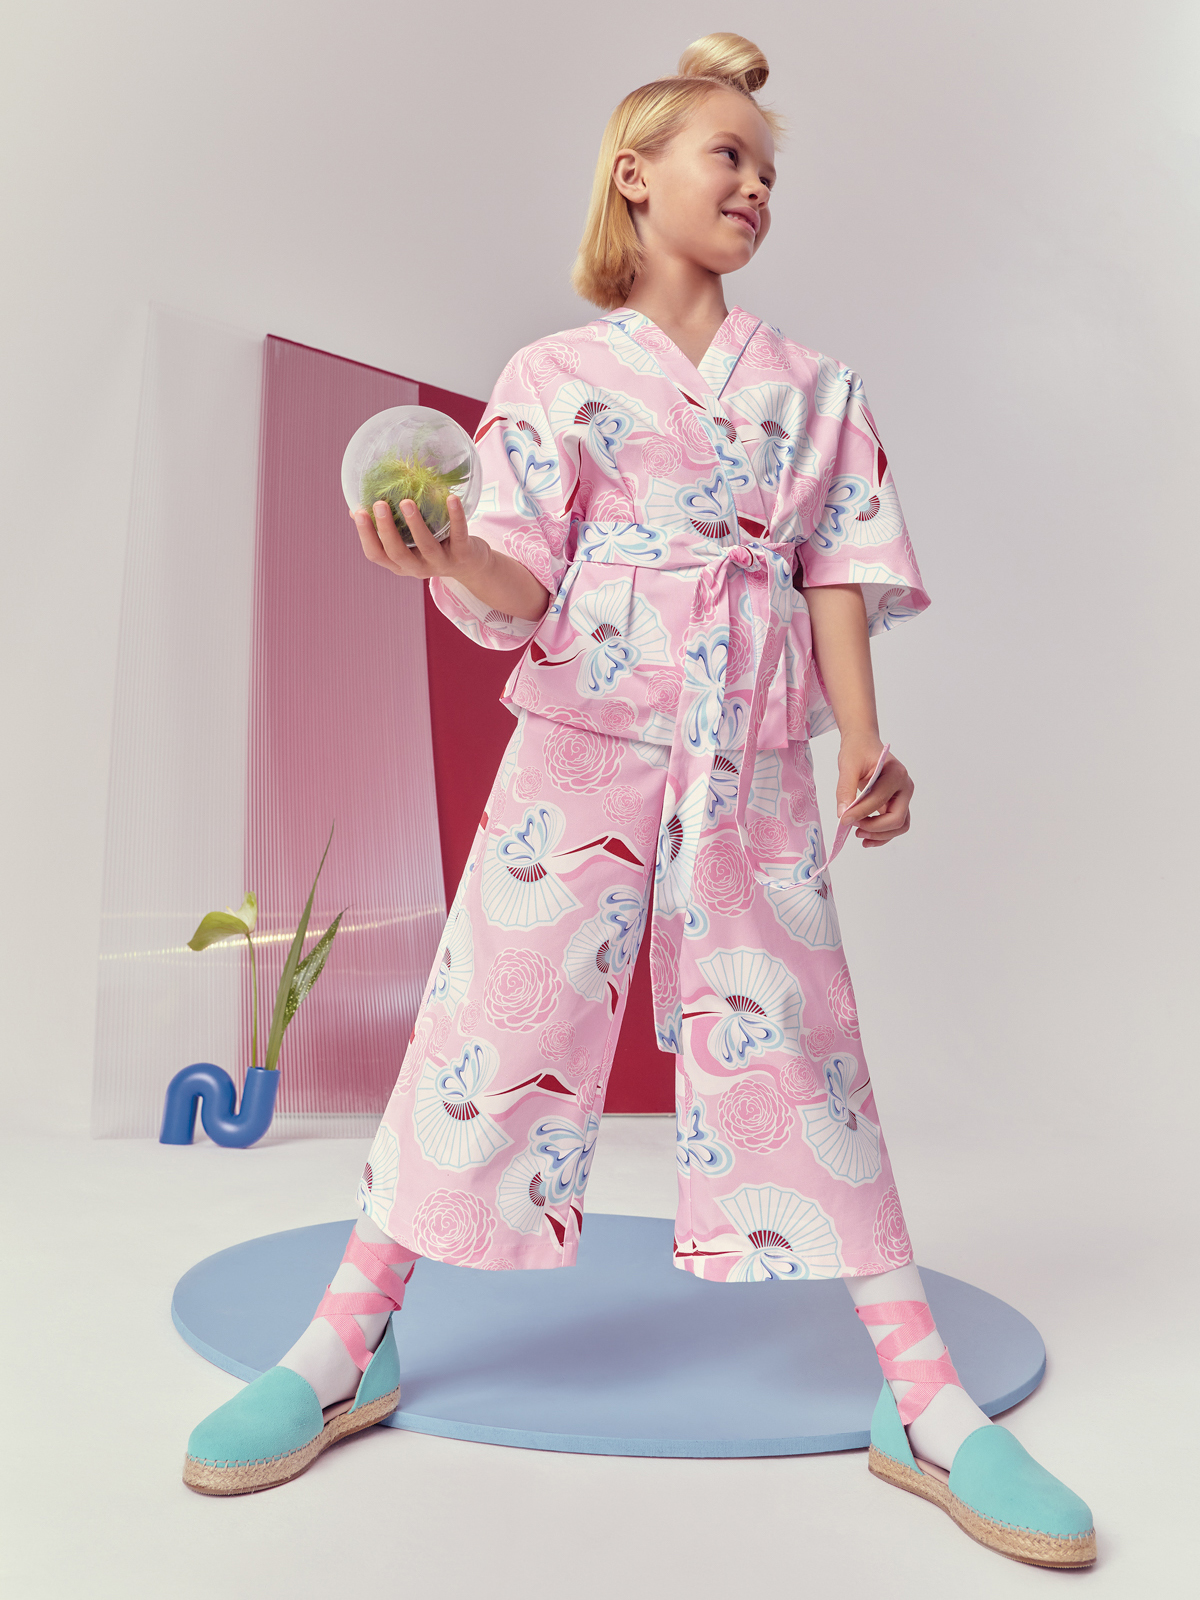 collezione abbigliamento bambina elegante kimono fiori Simonetta primavera estate 2022 sprin summer moda italiana made in italy